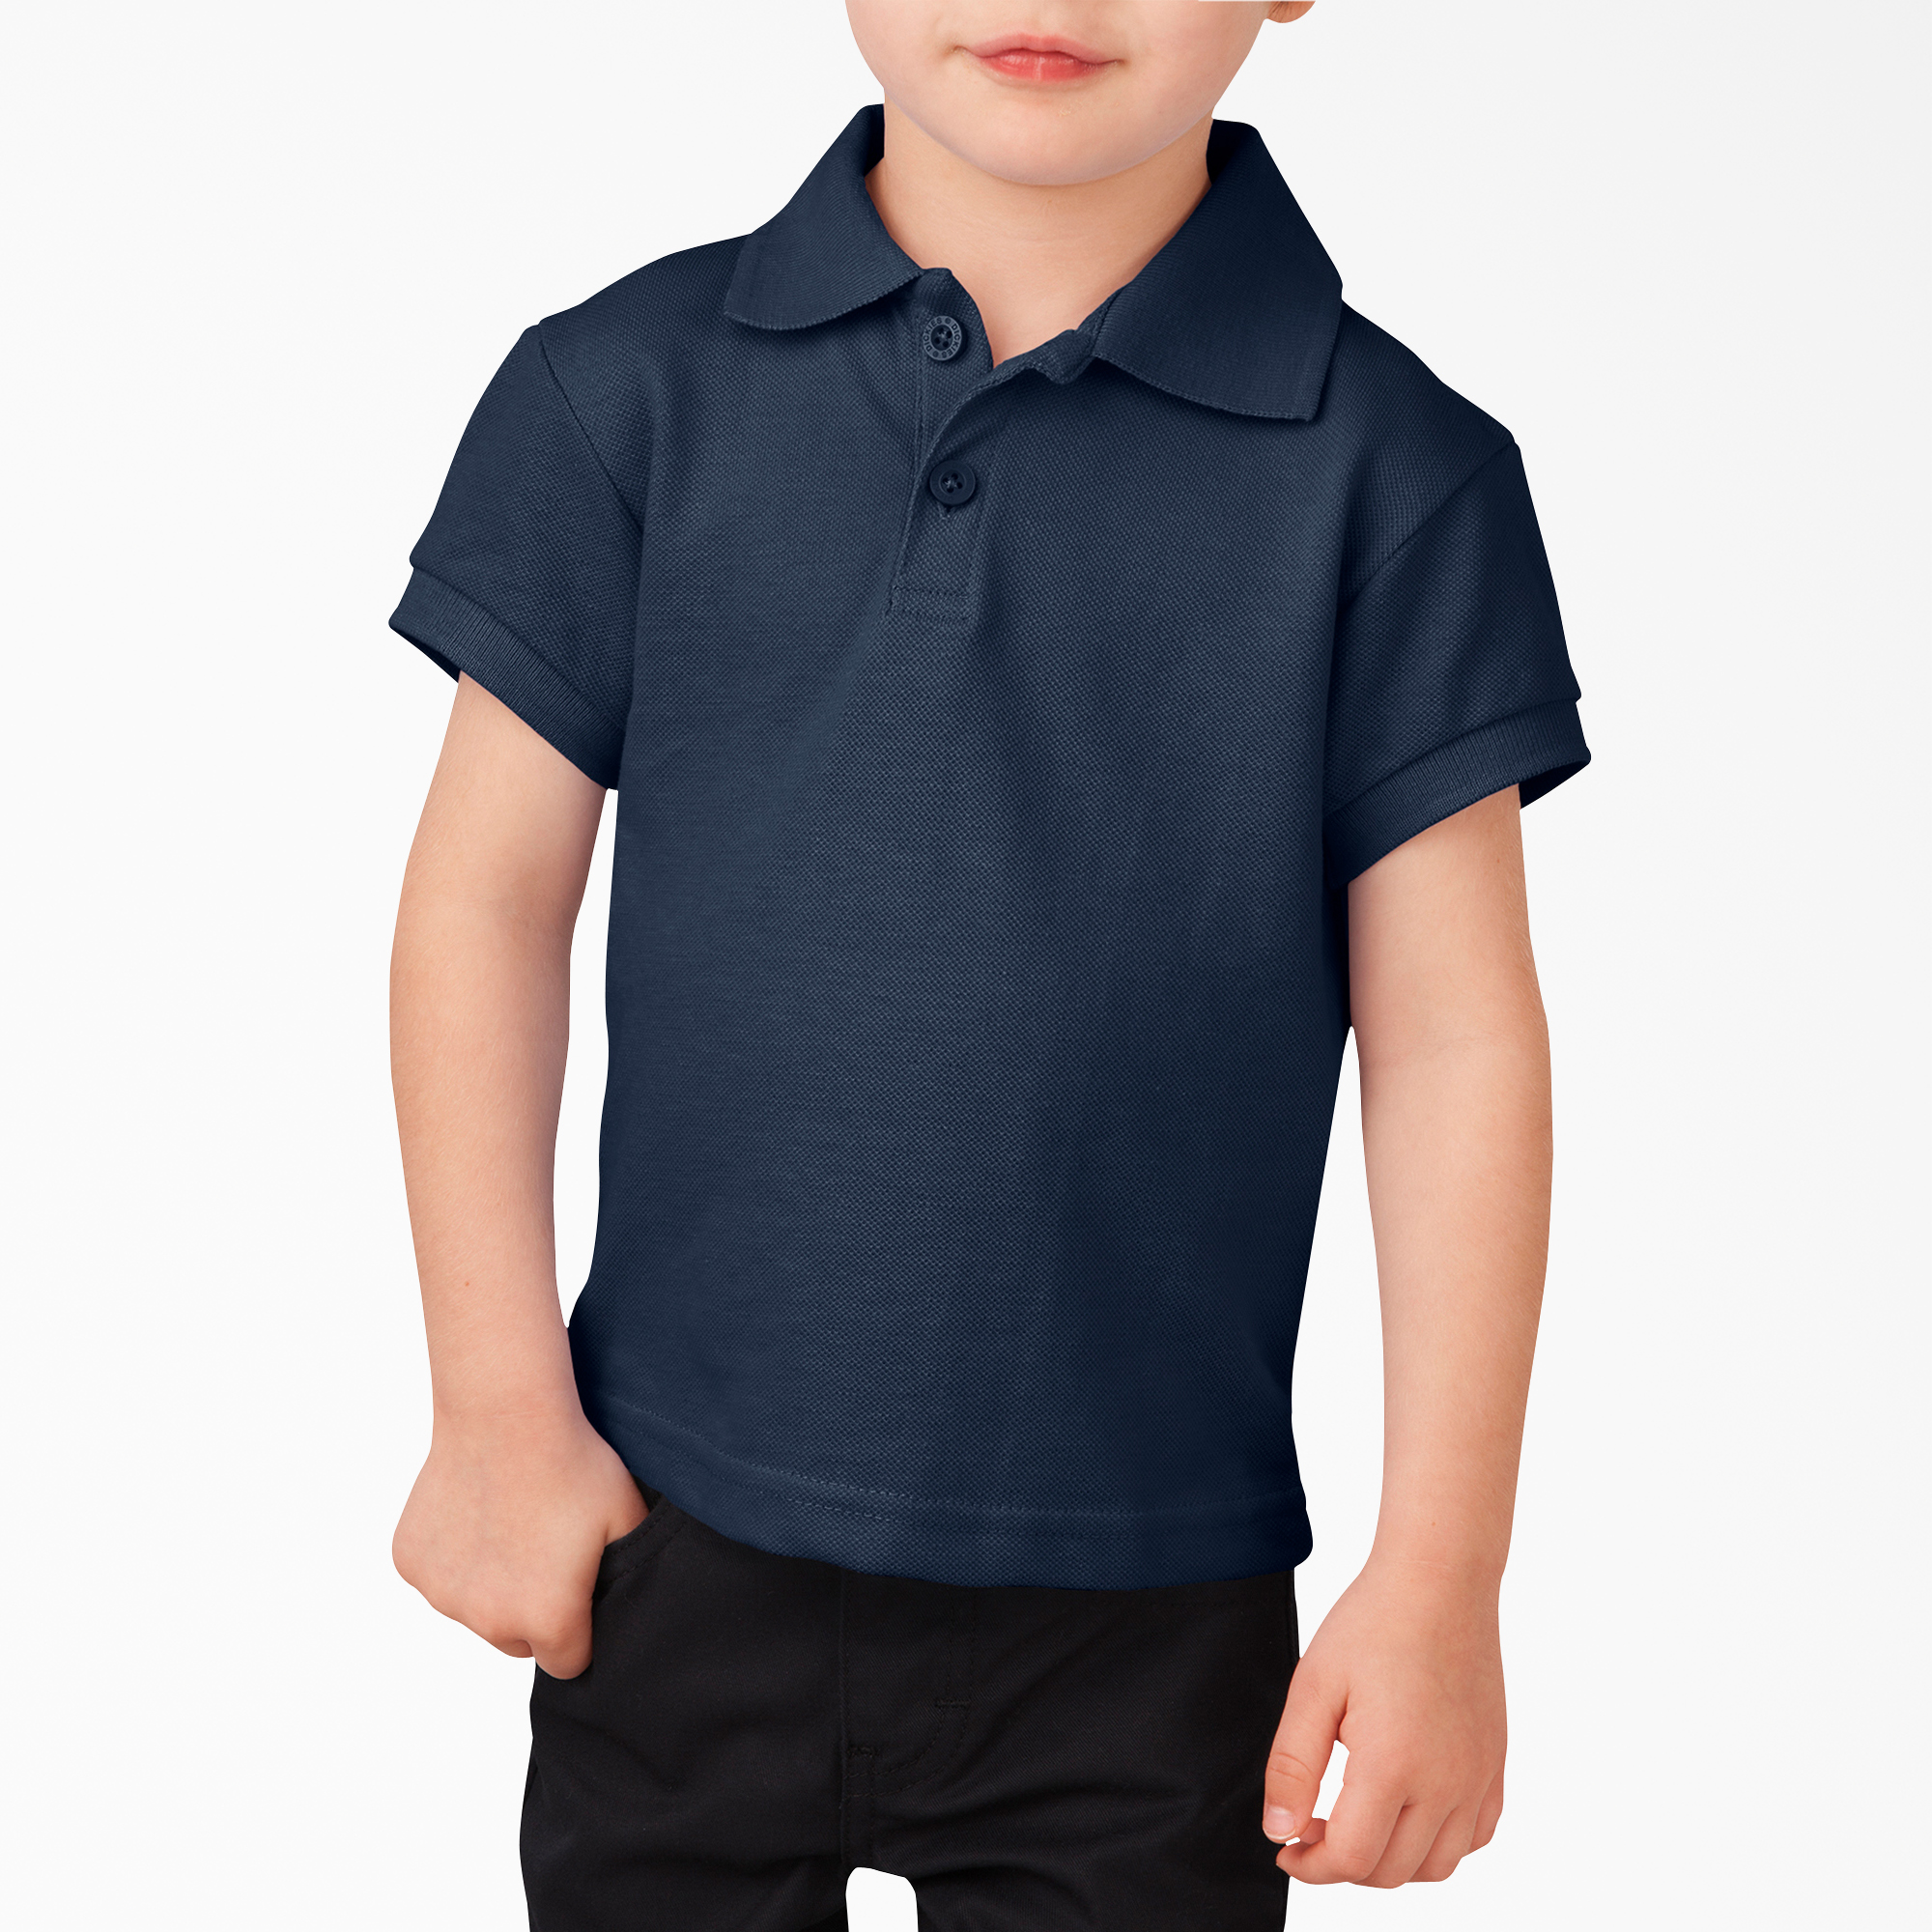 Toddler Short Sleeve Piqué Polo Shirt - Dark Navy (DN)